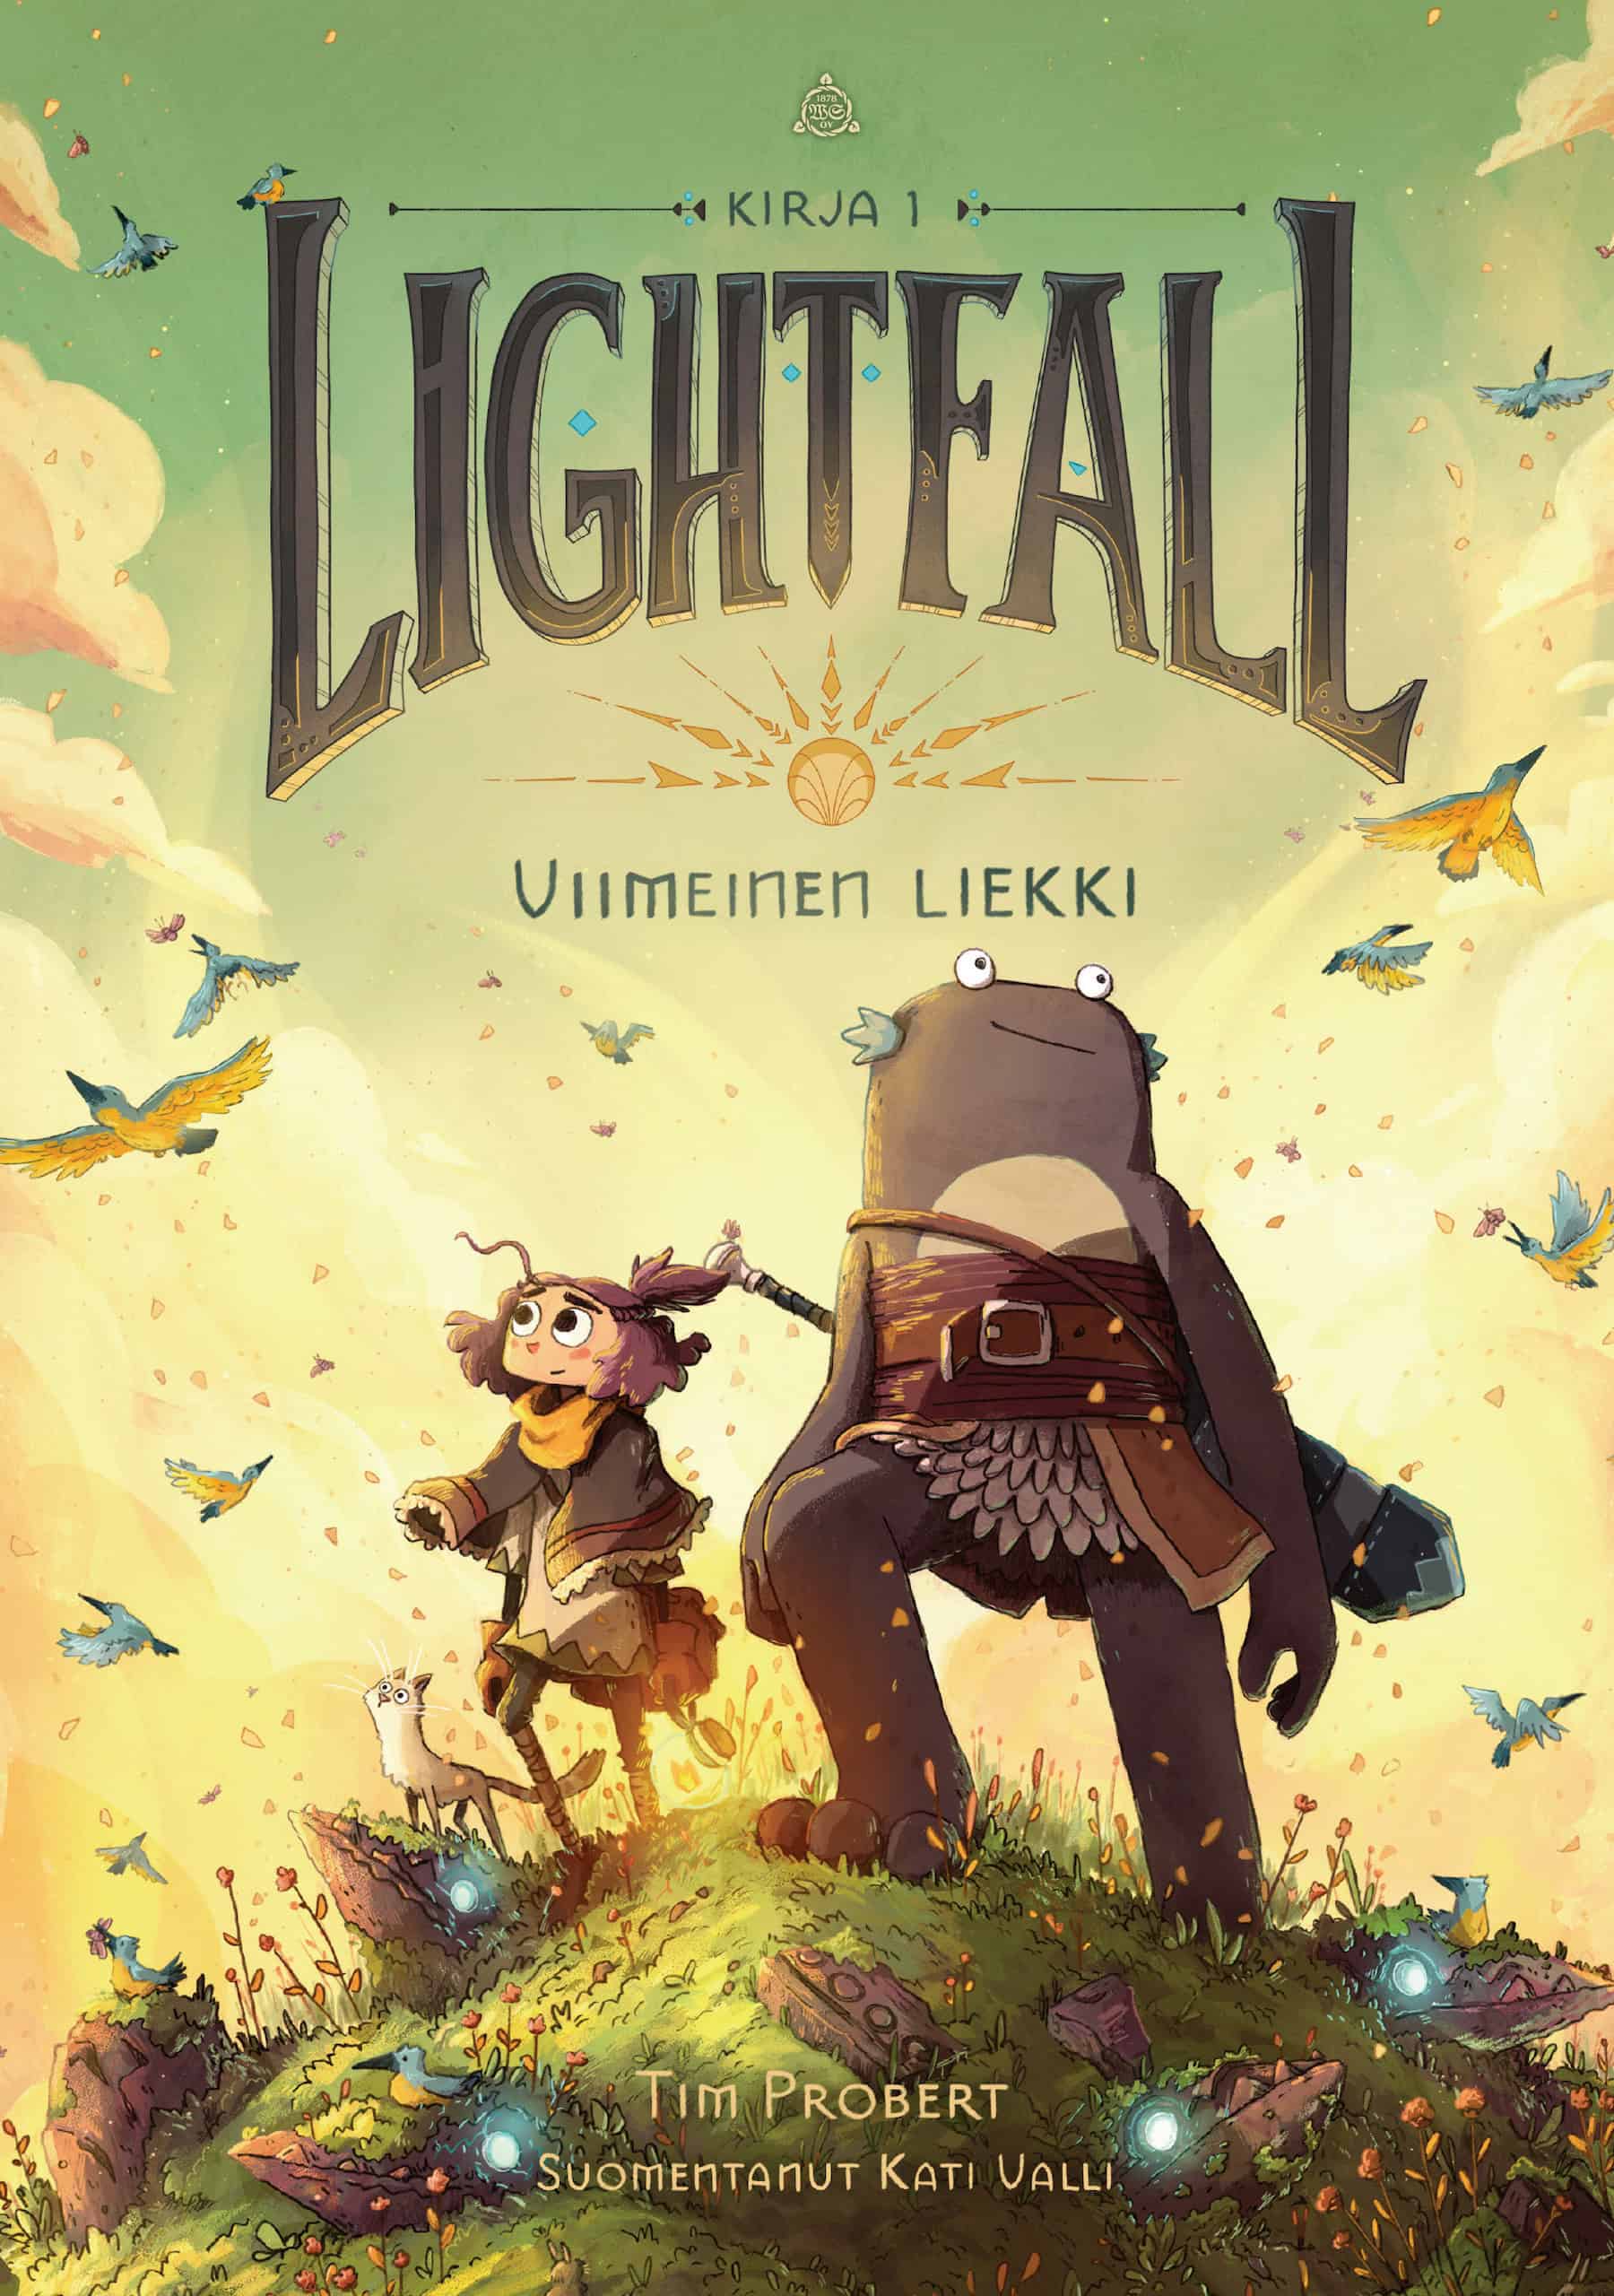 Lightfall: Viimeinen liekki